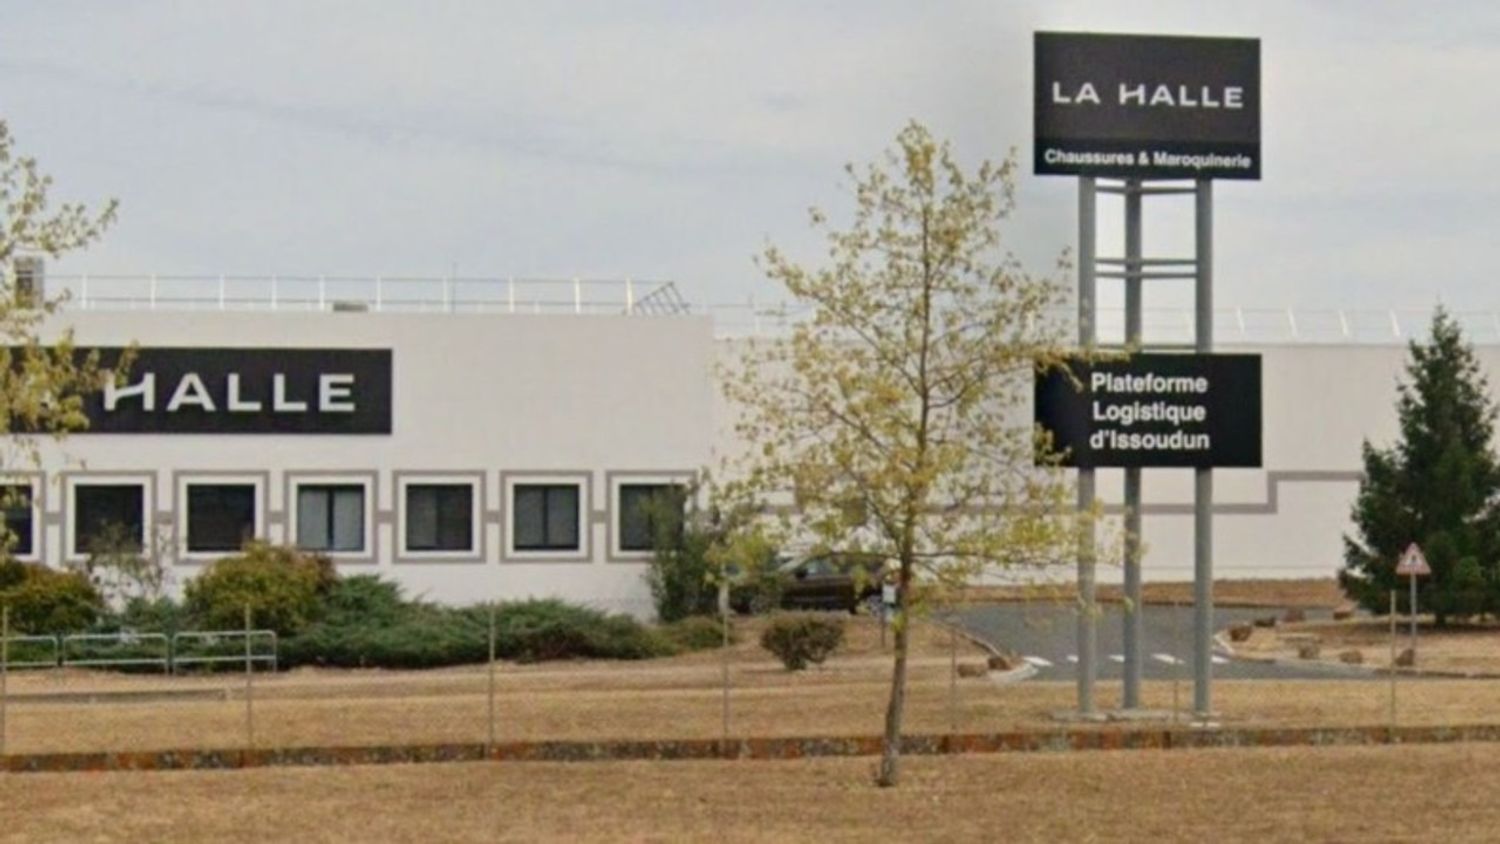 Entrepôt logistique La Halle Issoudun